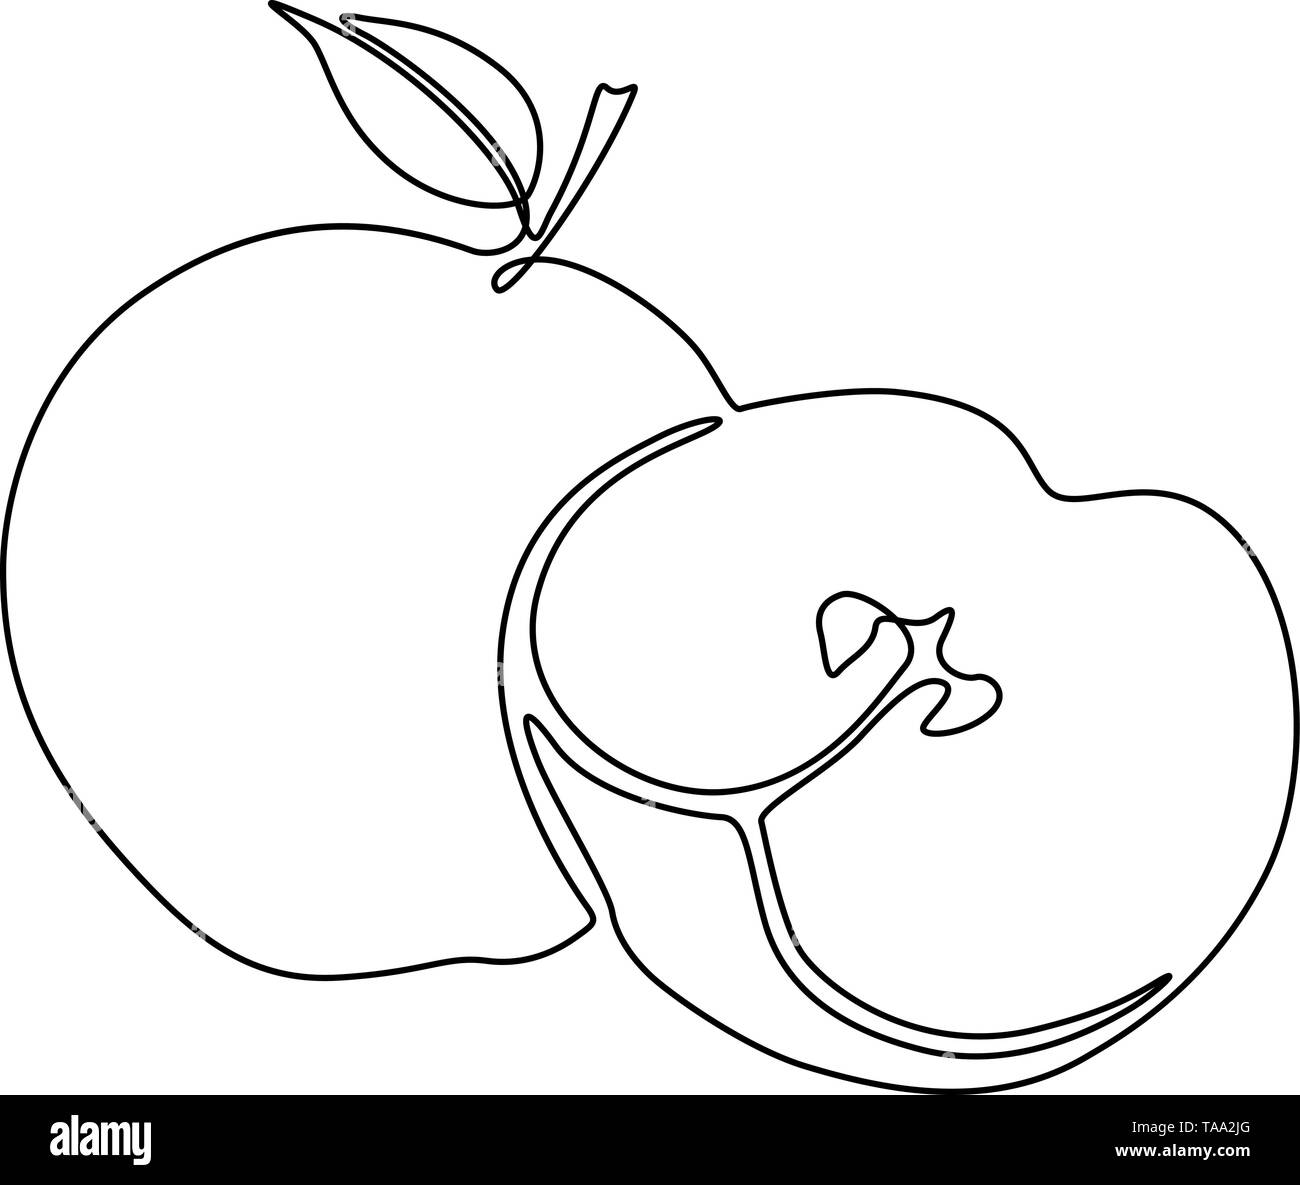 Durchgehende Linie Apple und Apple. Vector Illustration. Stock Vektor